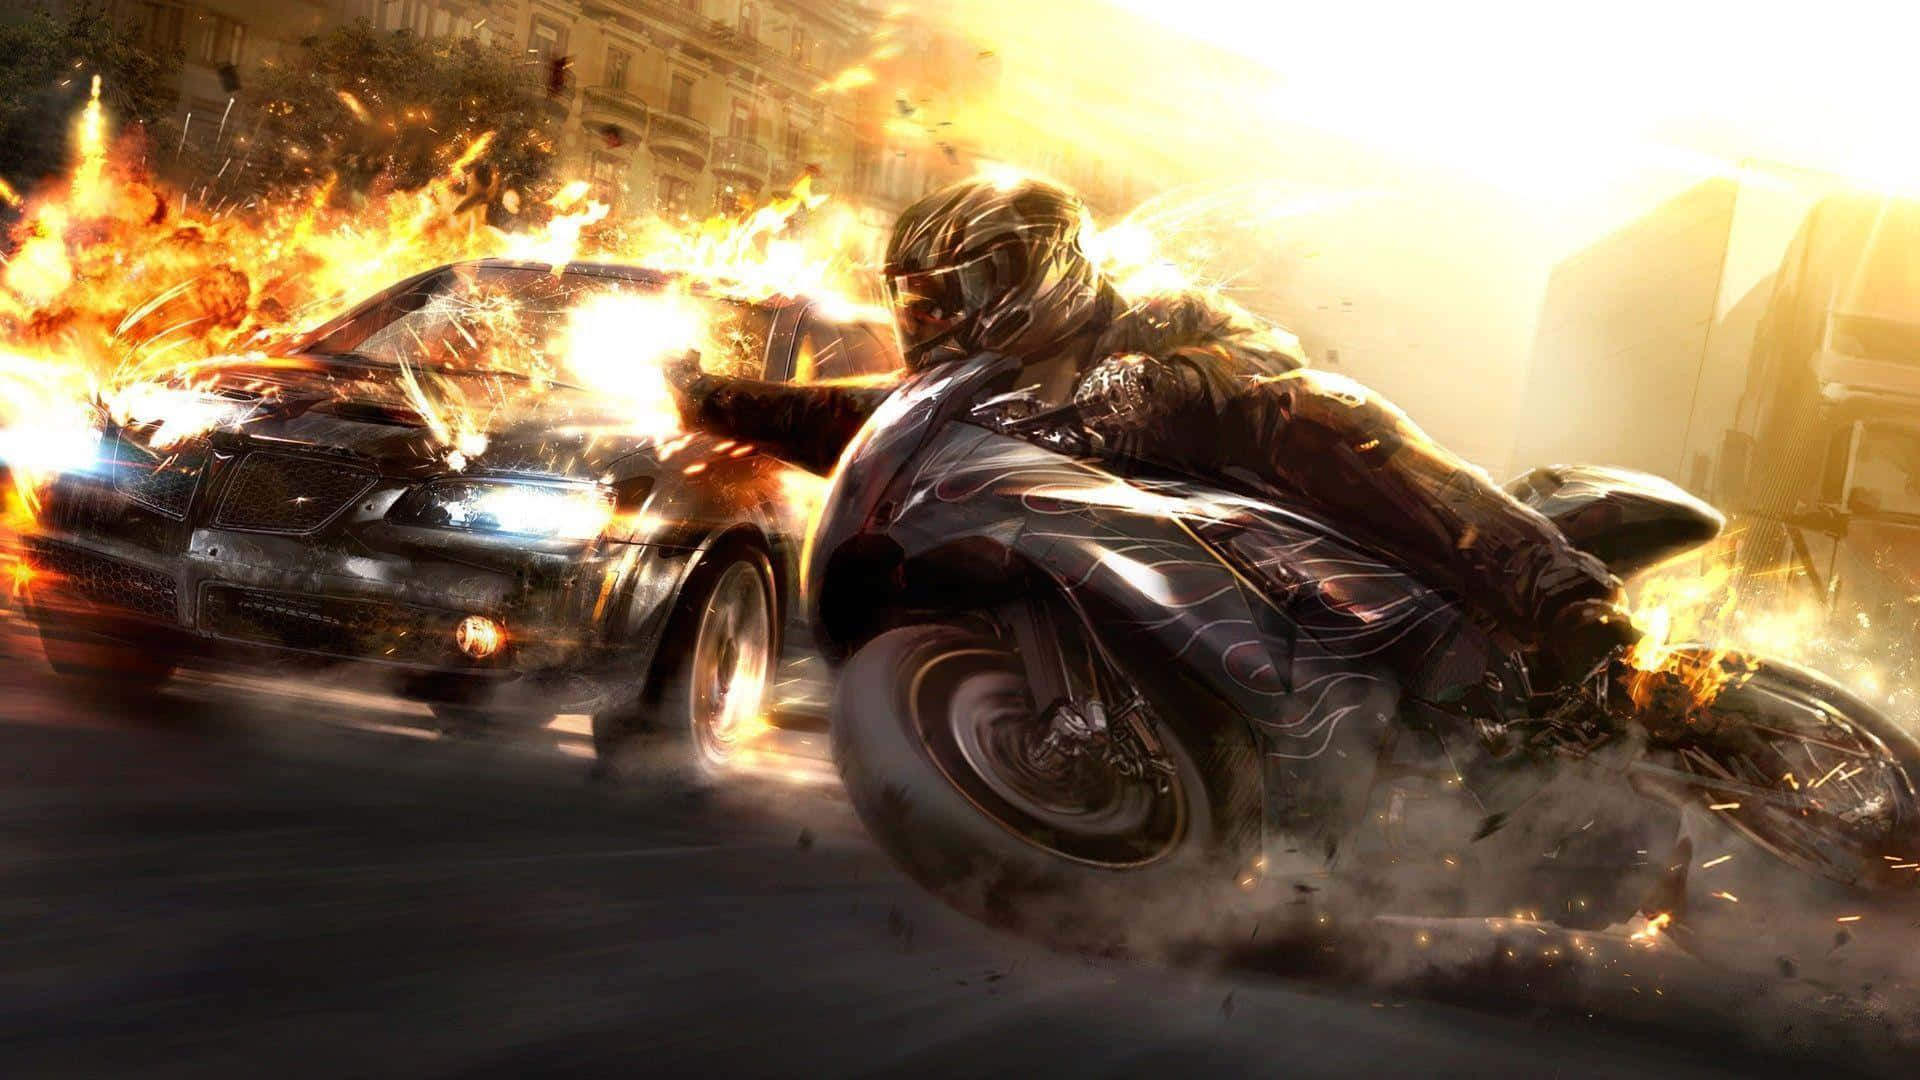 Einmotorrad Steht In Flammen. Wallpaper